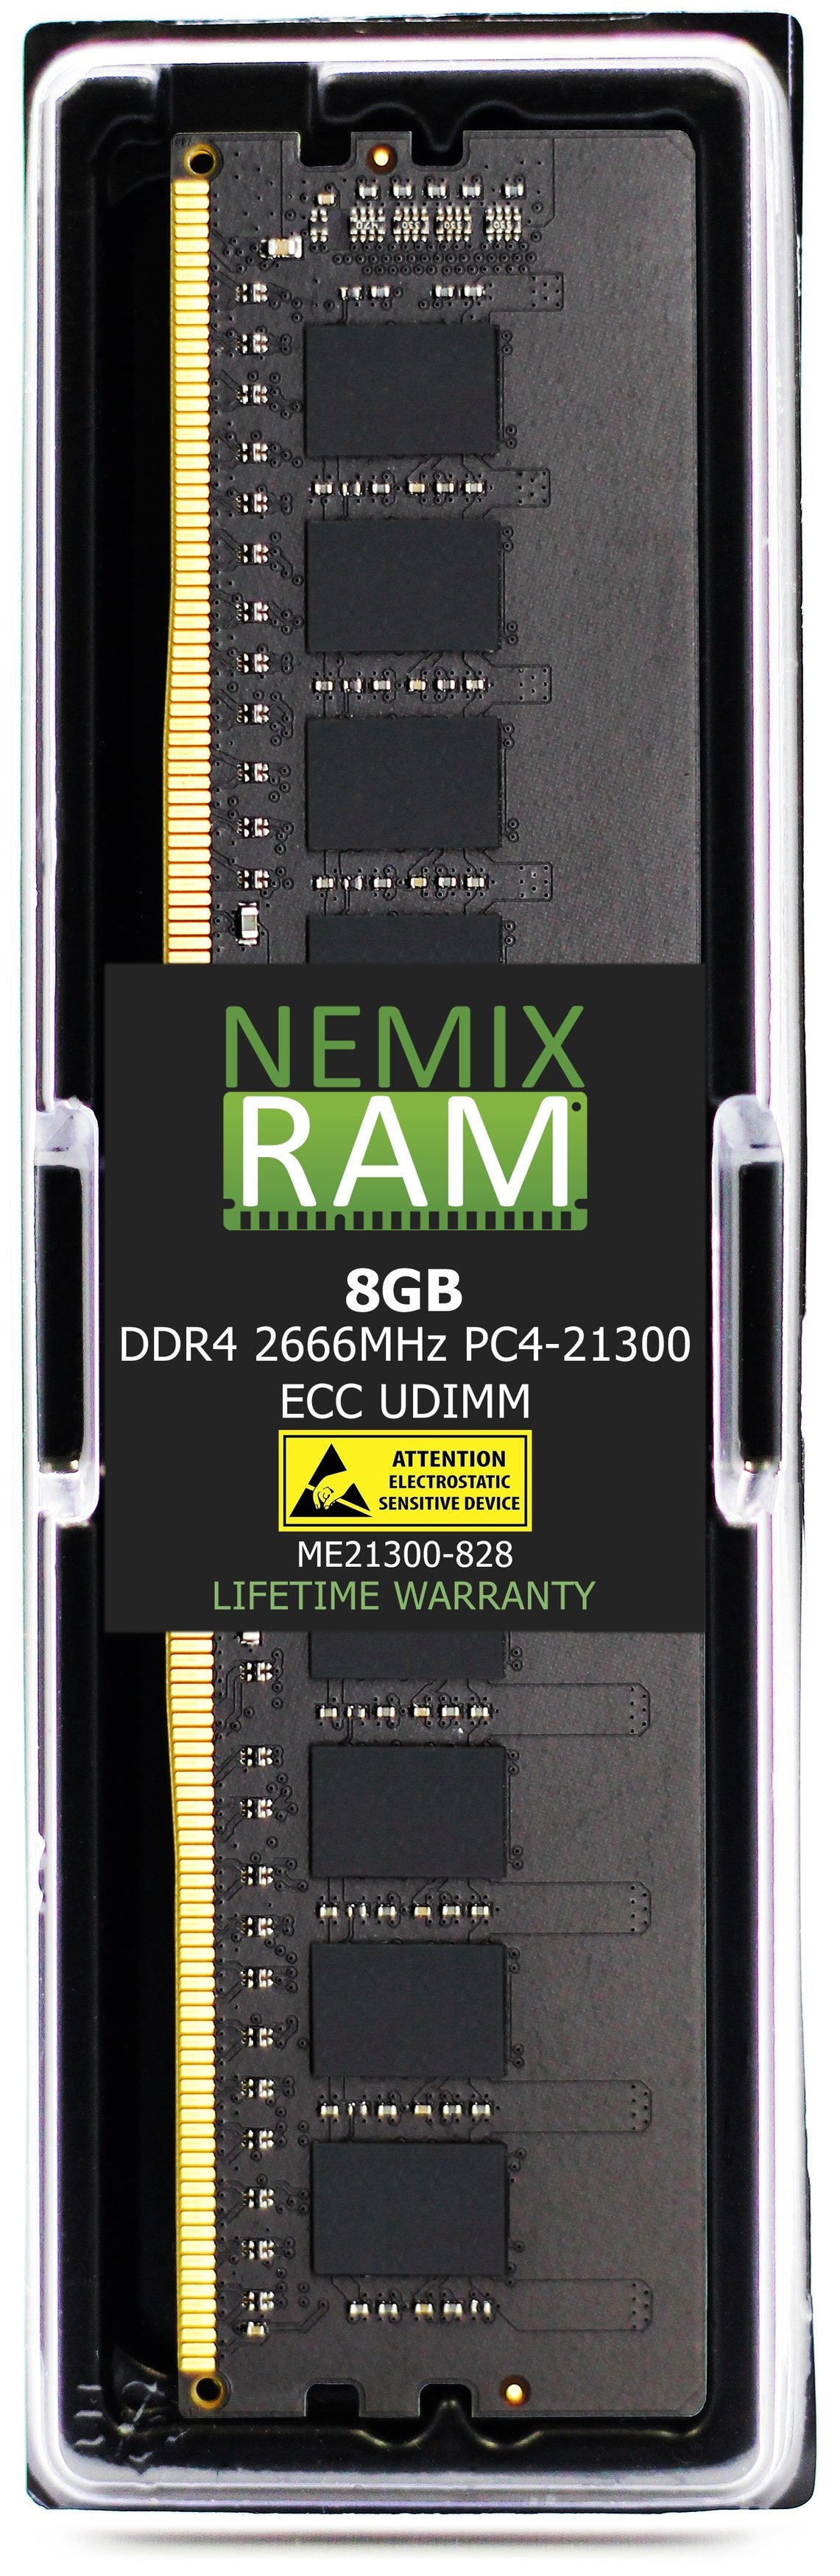 NEC Express5800 T110j Memory Module N8102-716F 8GB DDR4 2666MHZ PC4-21300 ECC UDIMM